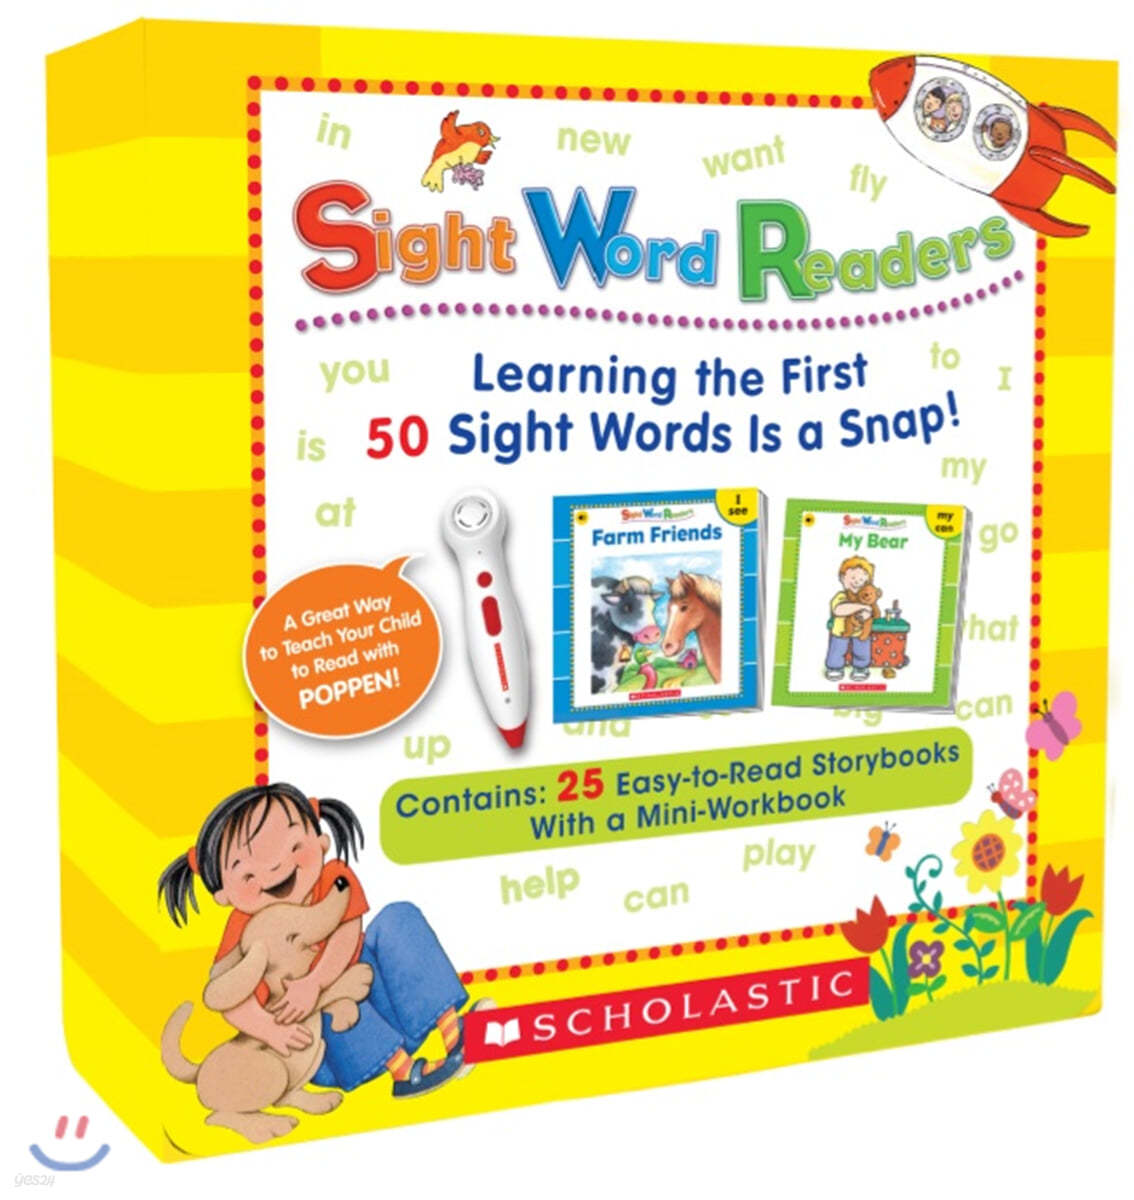 스콜라스틱 사이트 워드 리더스 (CD, 워크북 포함 / 팝펜 에디션) Scholastic Sight Word Readers Book & CD